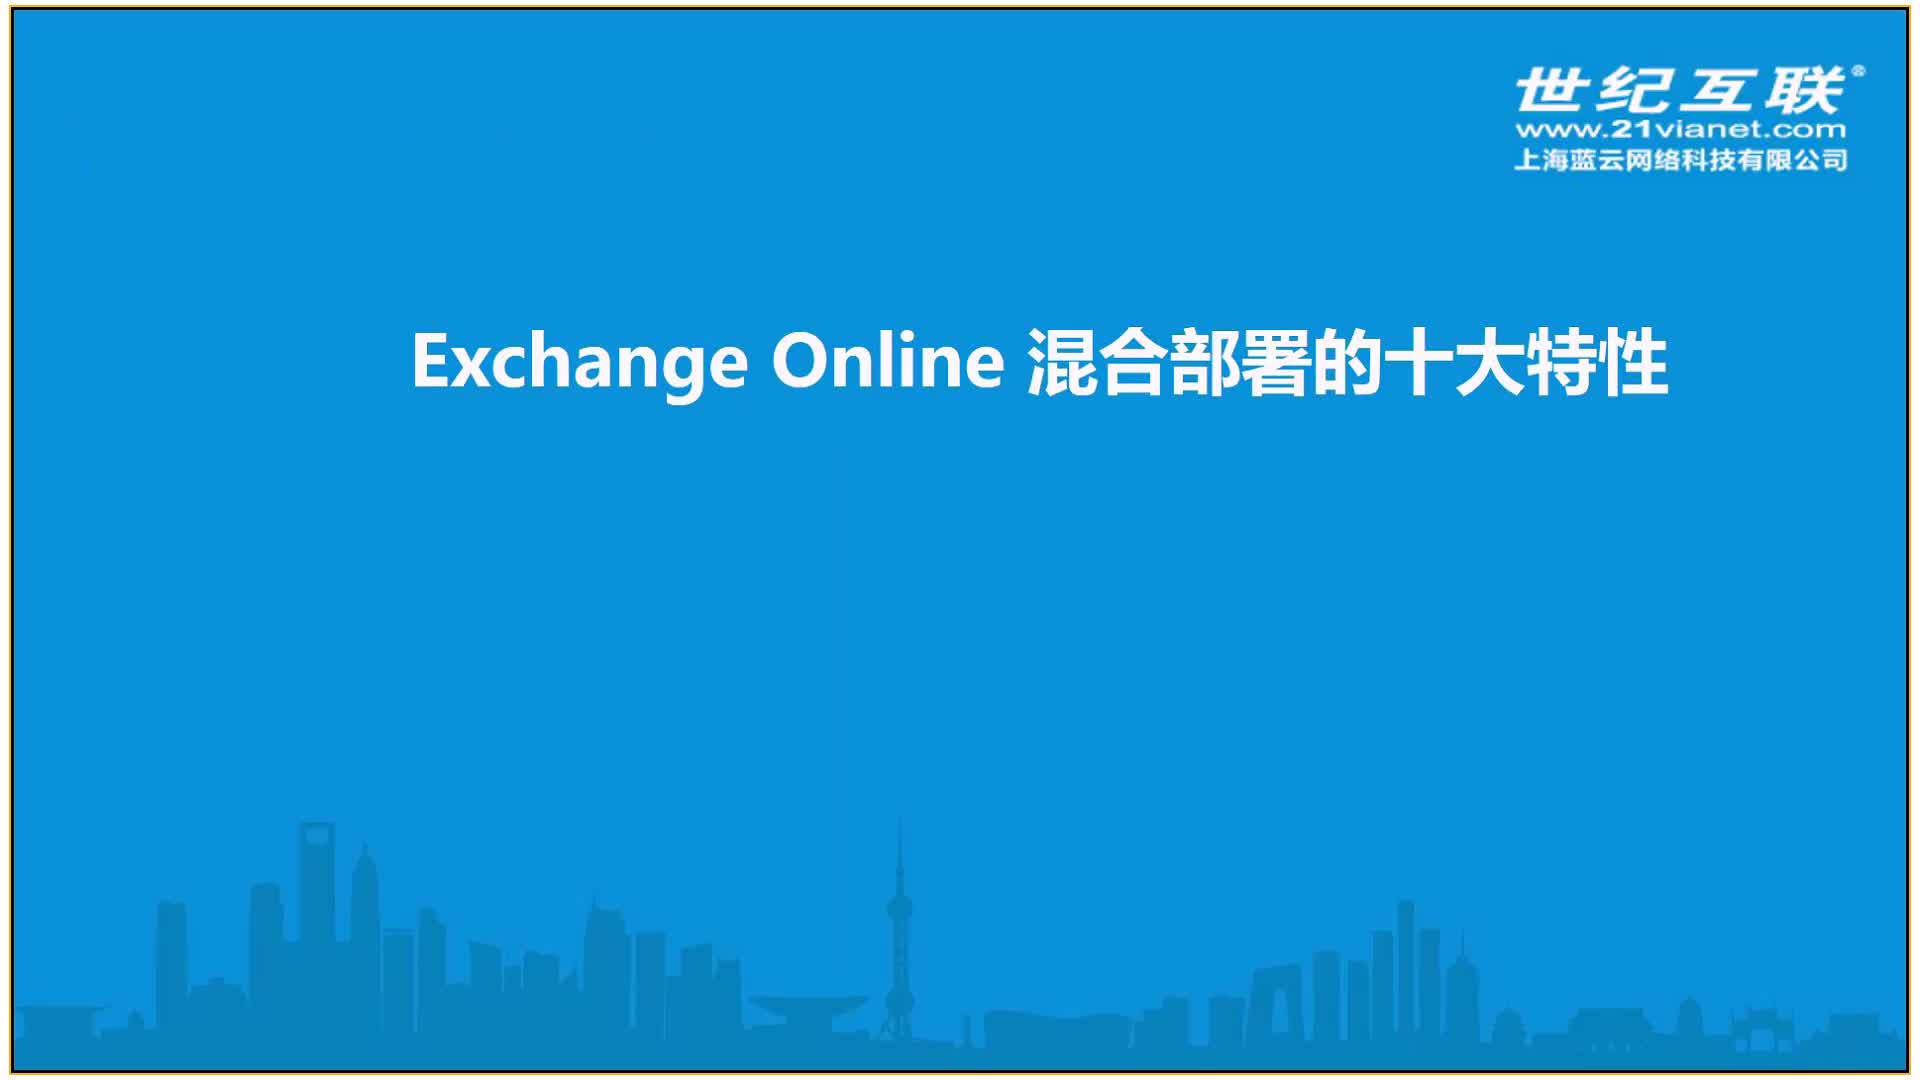 Office365 Exchange Online 系列之掌握混合部署